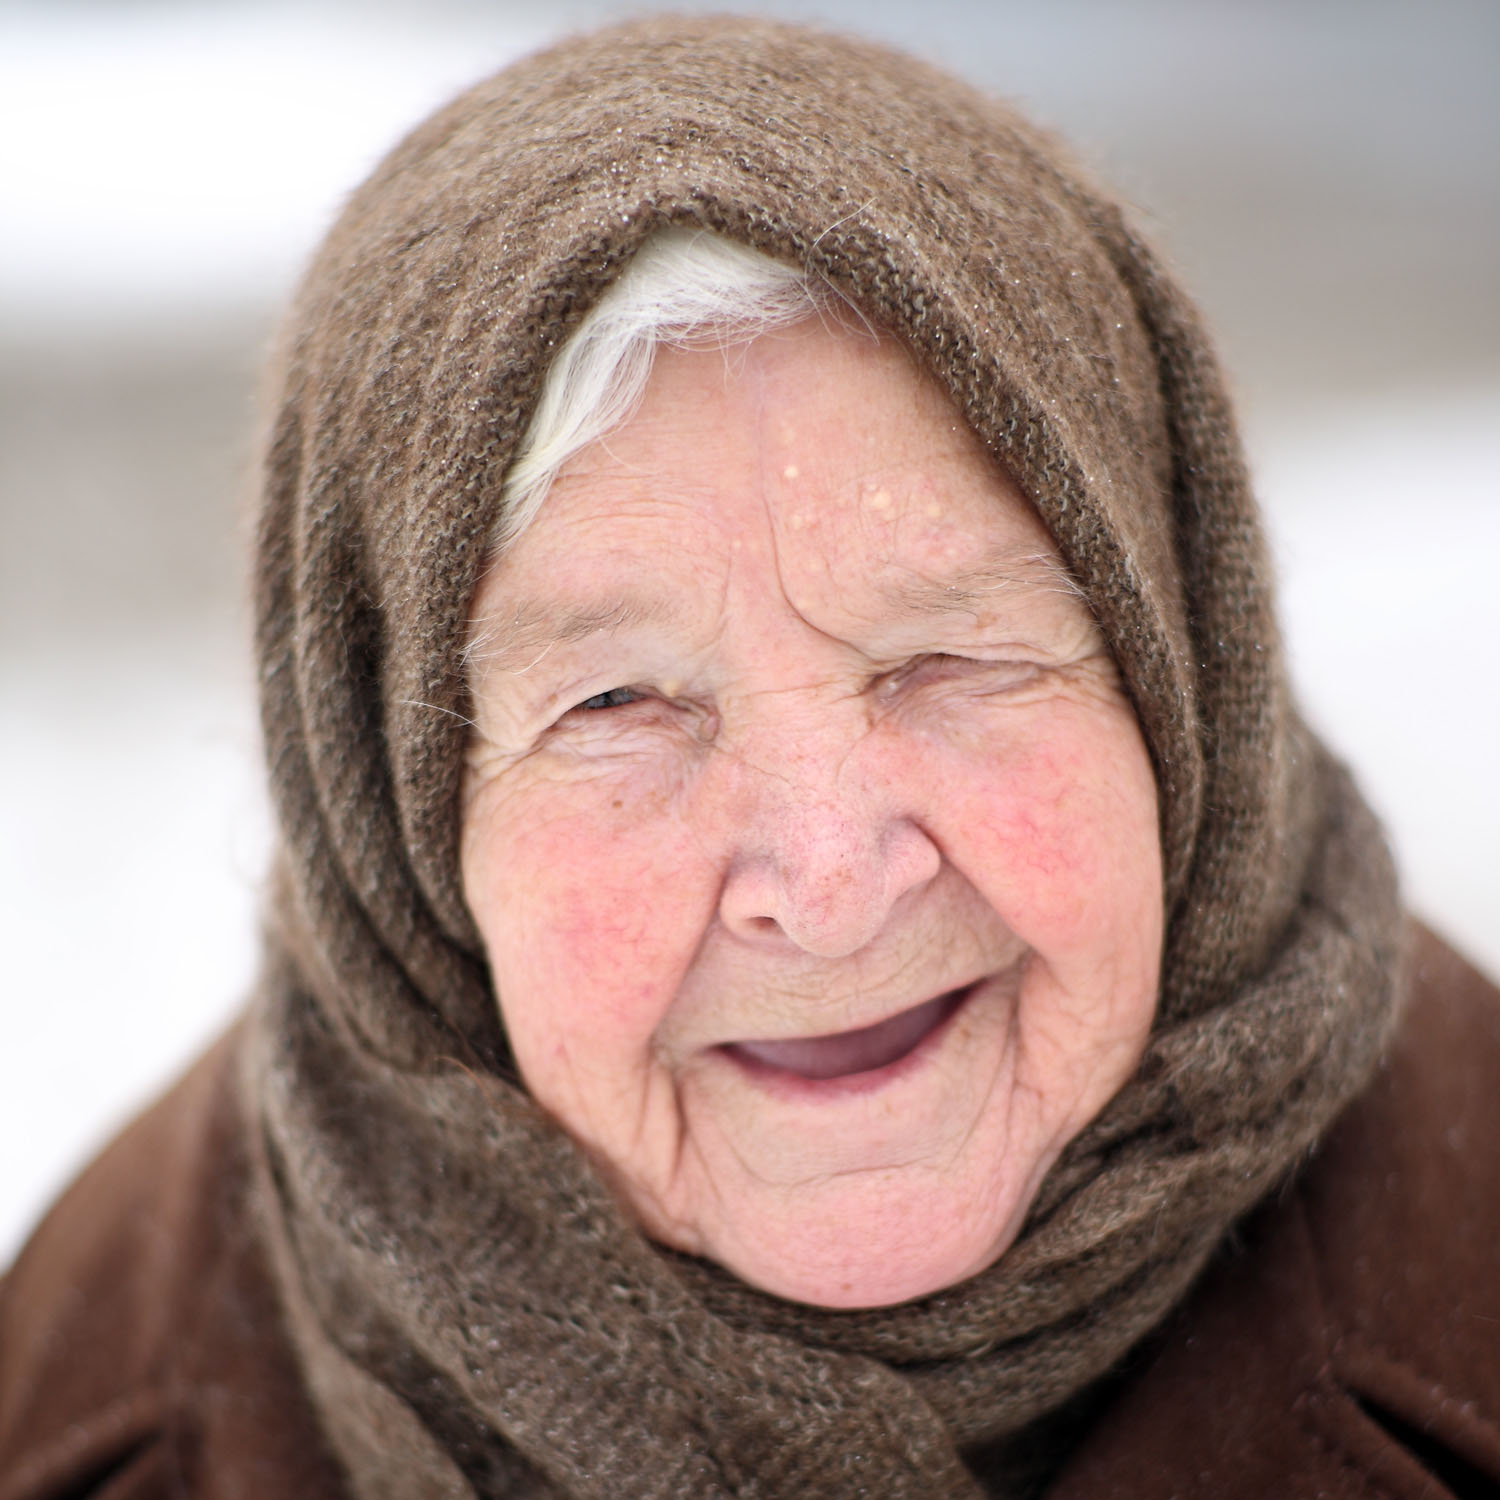 Ба бабушка. Бабушка улыбается. Лицо пожилой женщины. Старая бабушка. Милые, добрые бабушки.